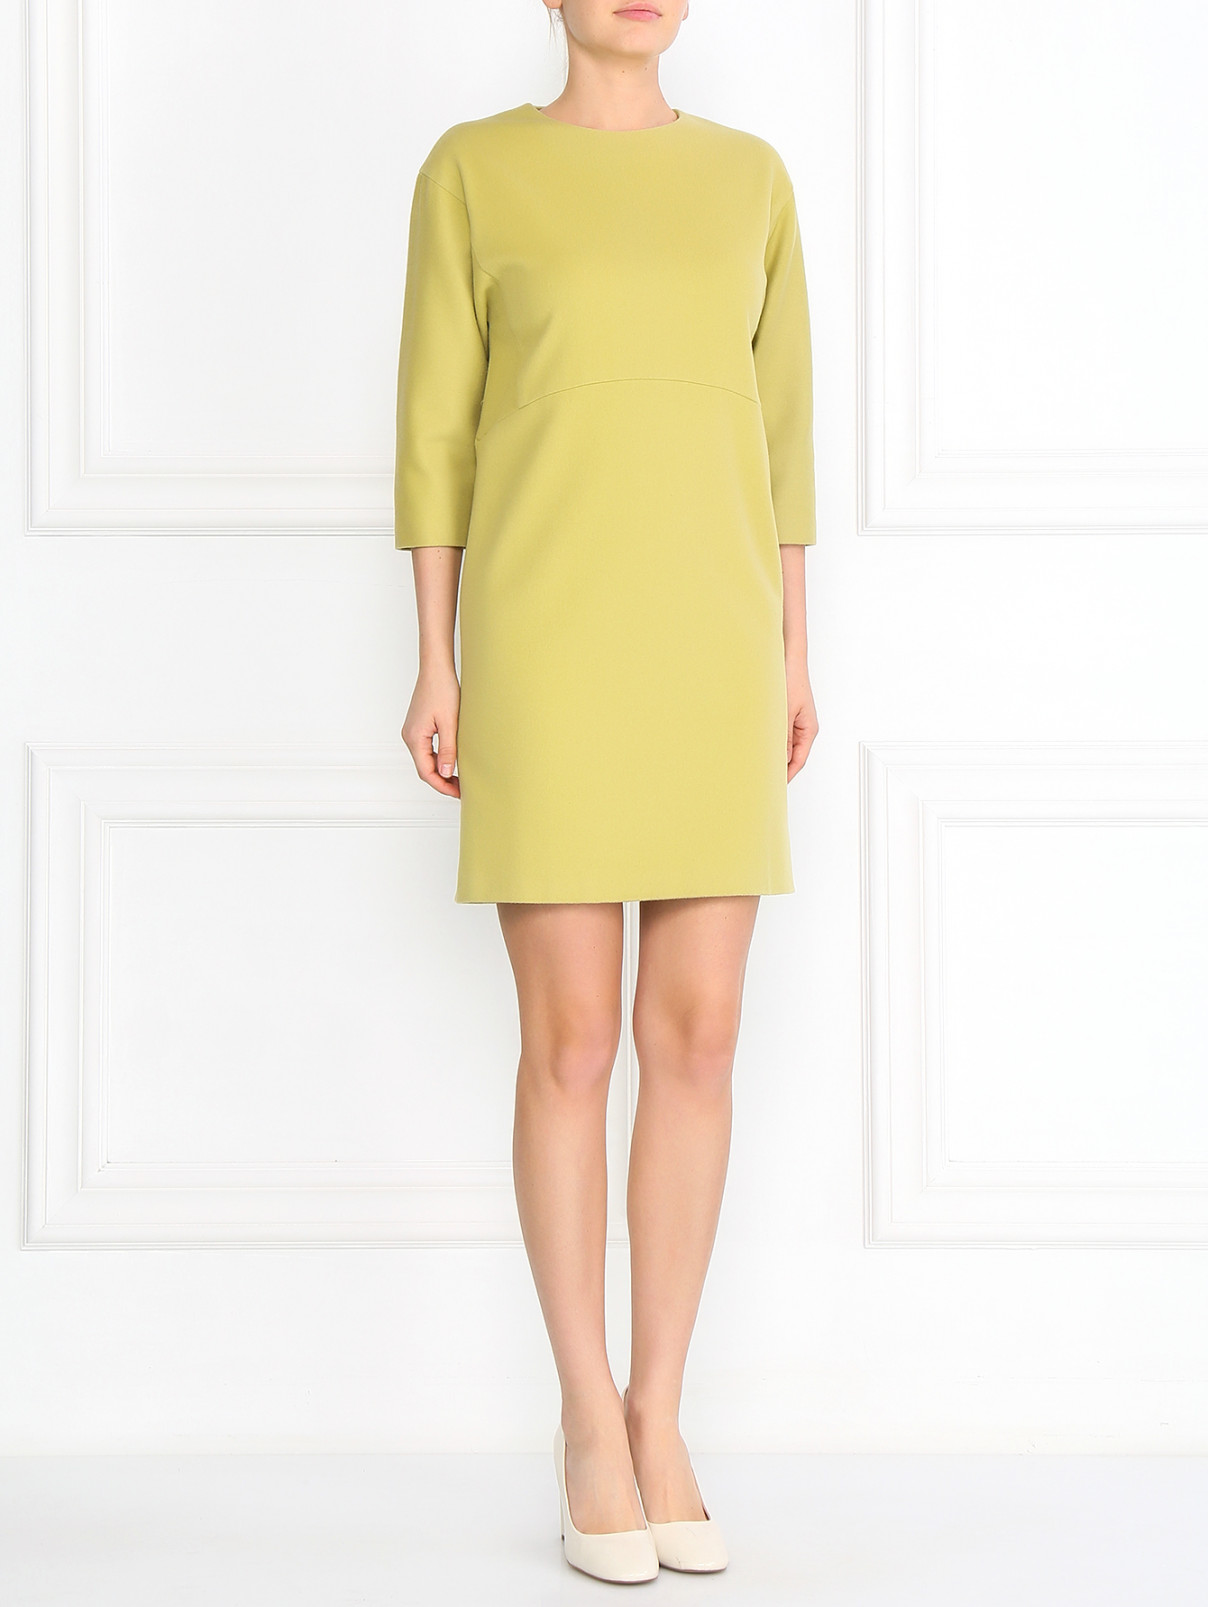 Платье из шерсти Ermanno Scervino  –  Модель Общий вид  – Цвет:  Зеленый